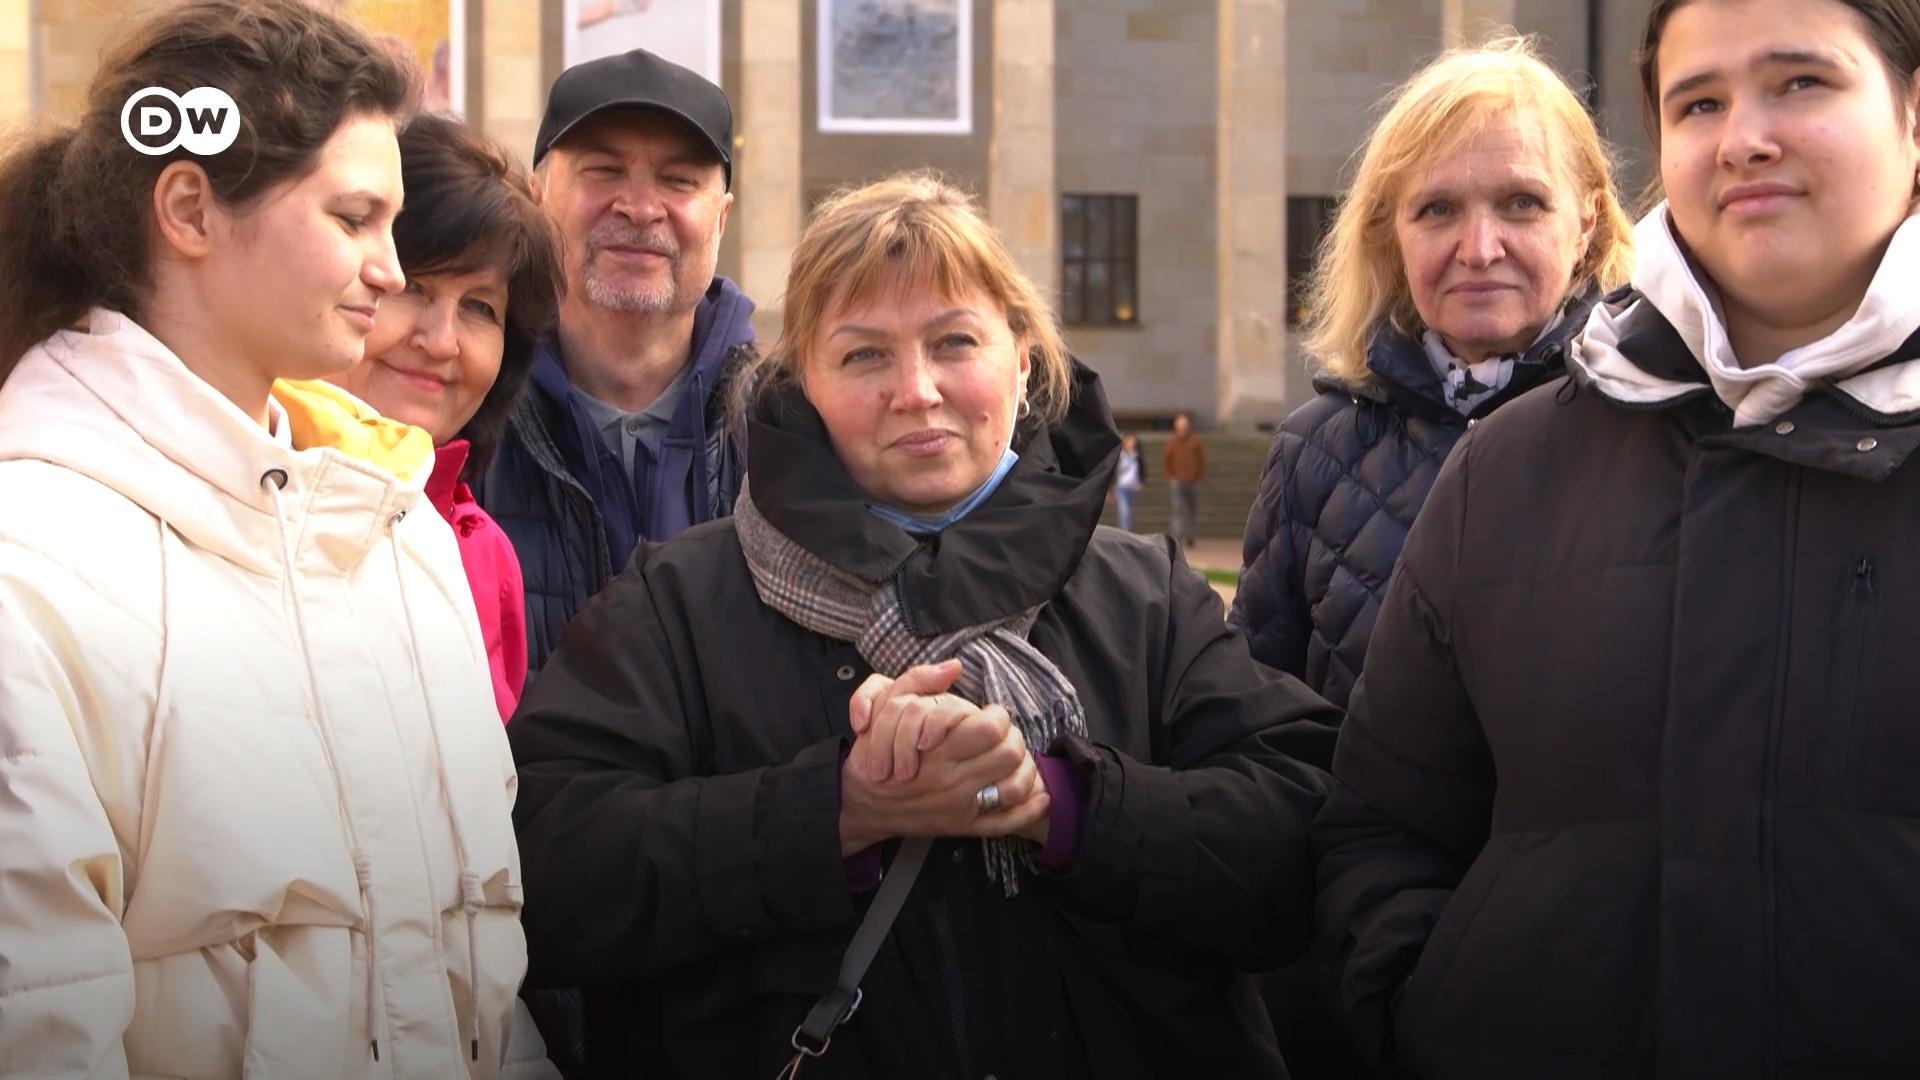 Близько 250 людей з вадами слуху з України знайшли прихисток від війни у Варшаві. Як вони почуваються в чужій країні?